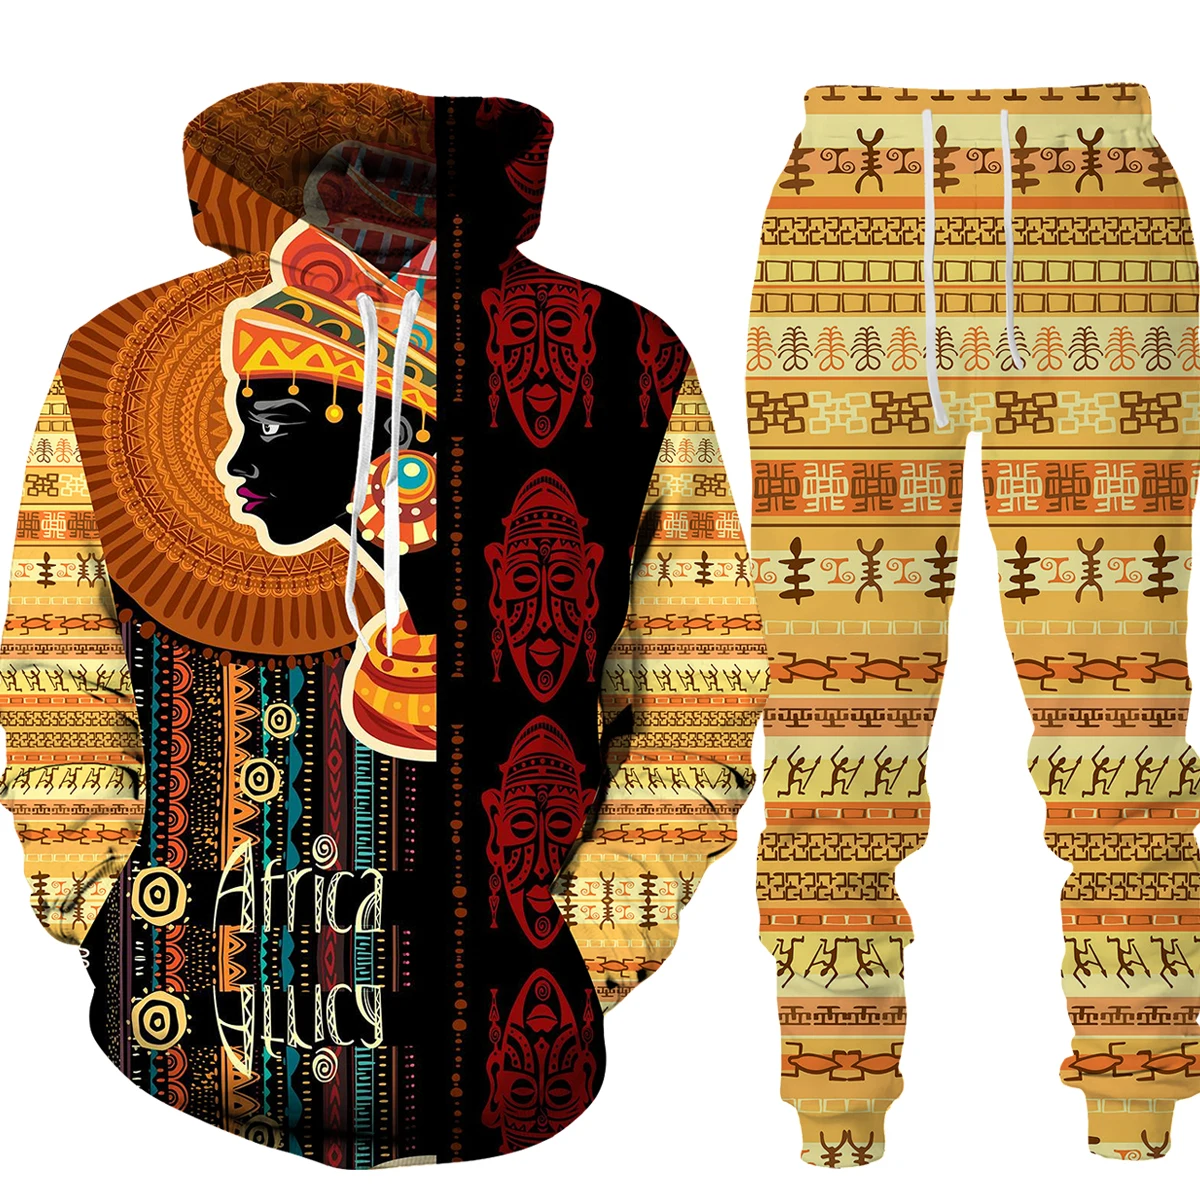 Kadın erkek 3D afrika baskı rahat Hoodie/takım elbise çift eşofman kıyafetler Vintage stil Hoodie pantolon seti erkek/kadın giyim seti